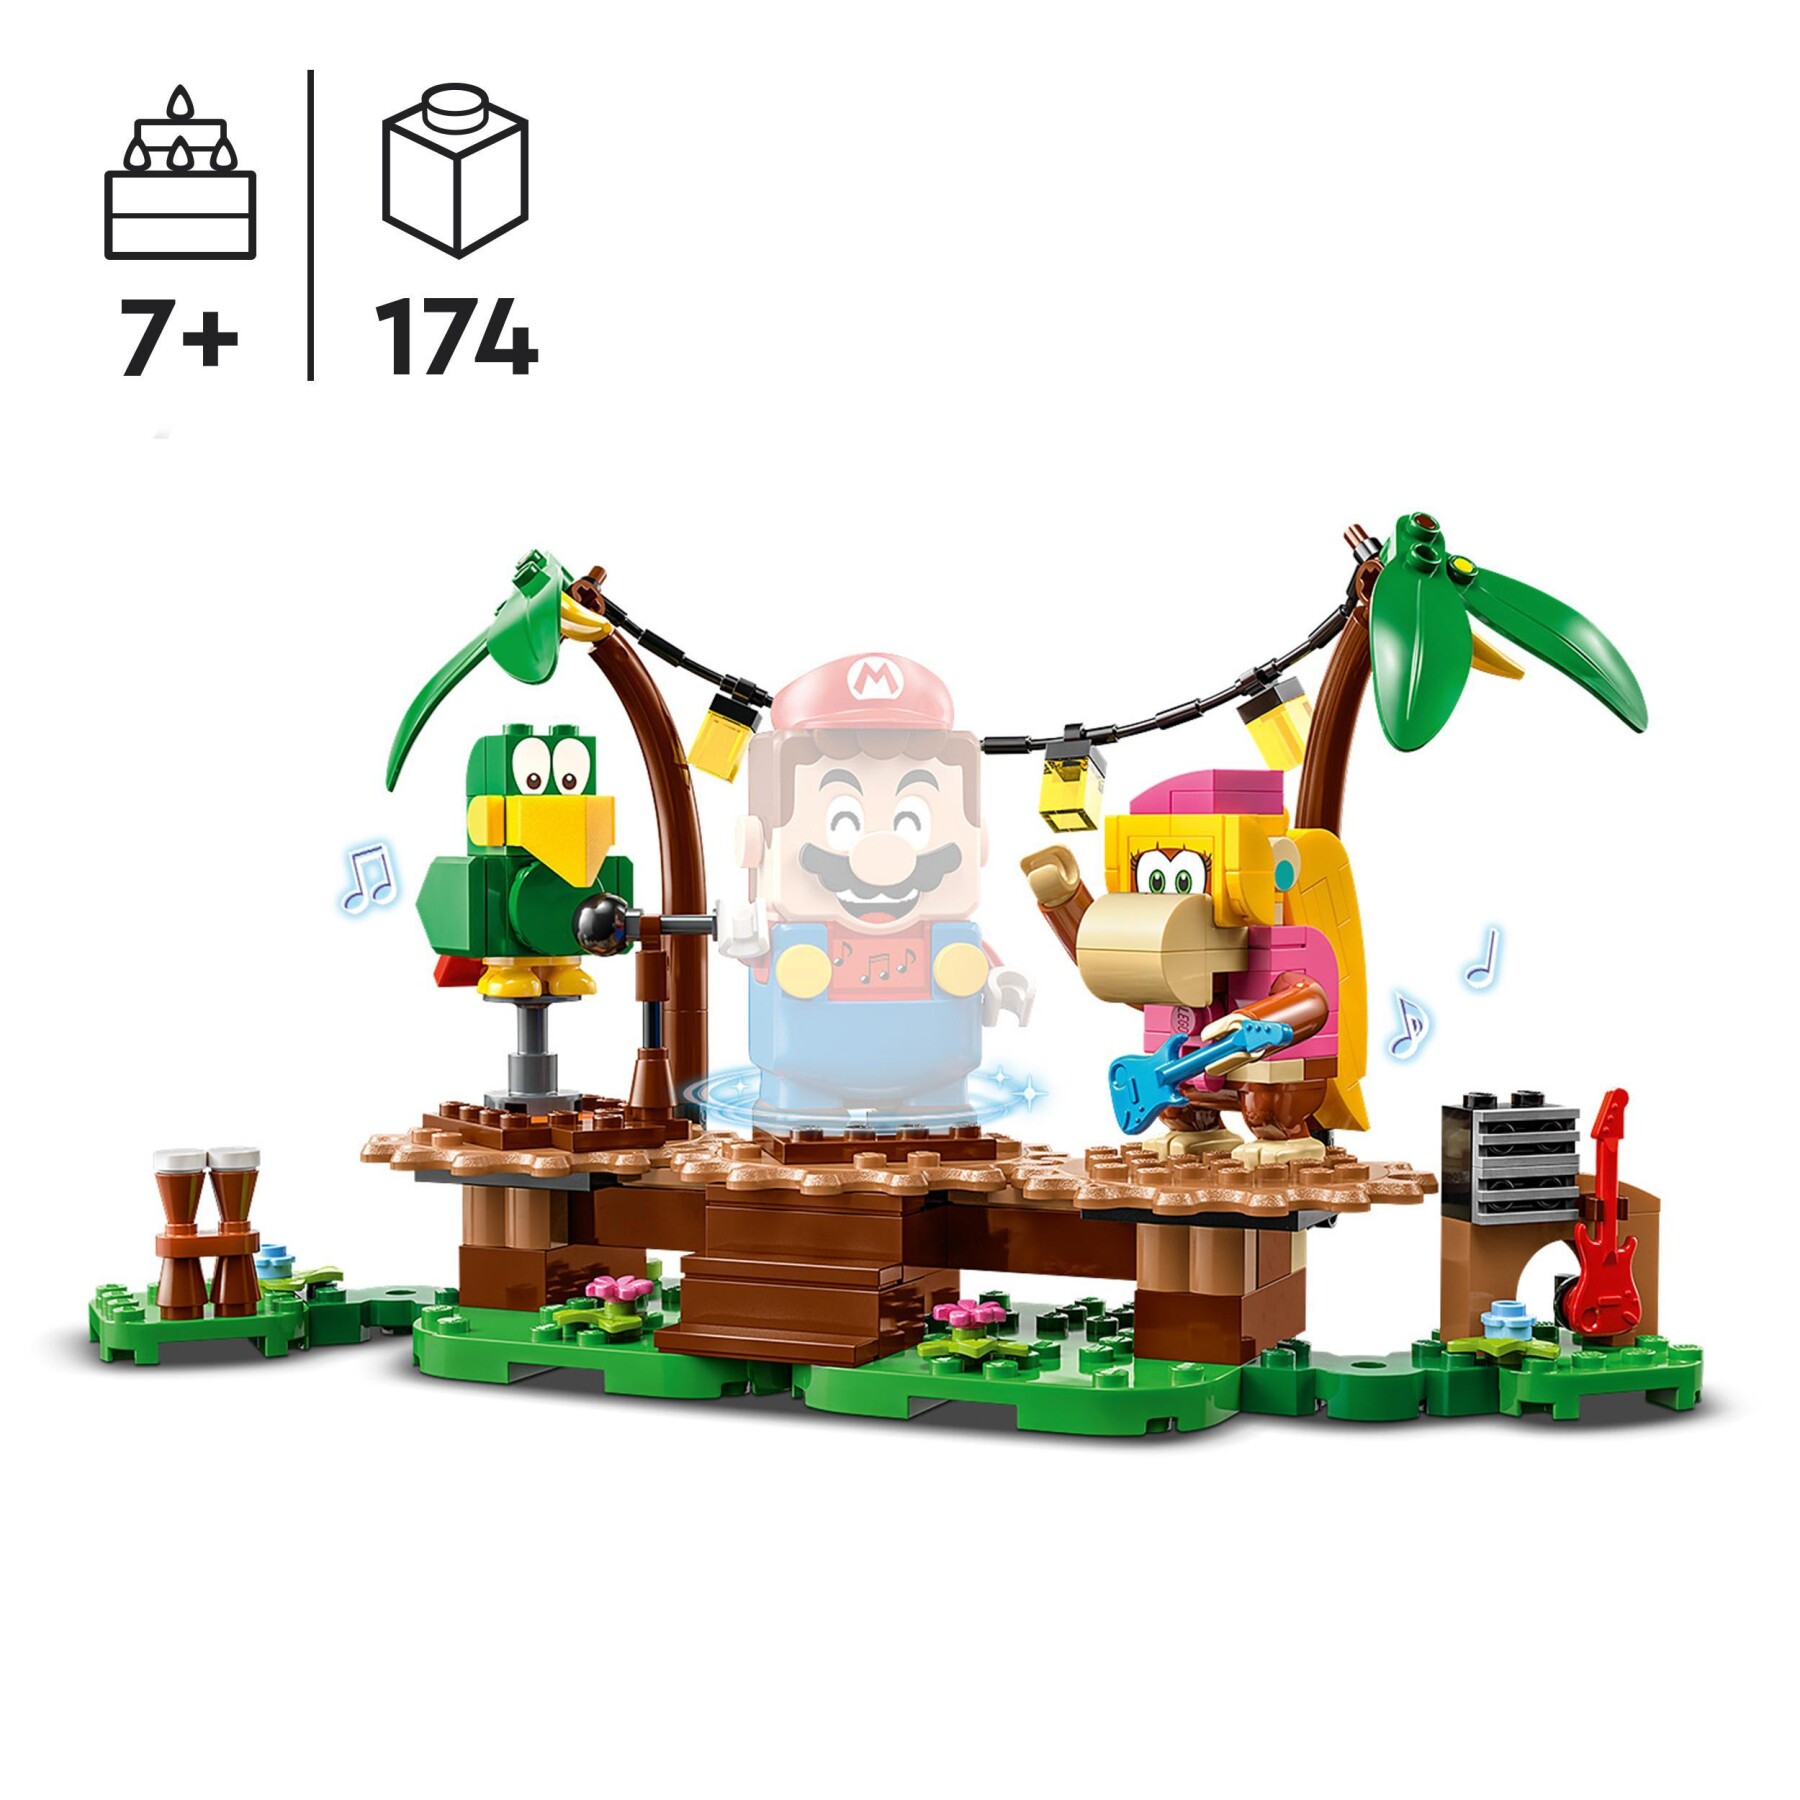 Lego super mario 71421 pack di espansione concerto nella giungla di dixie kong con figure di dixie kong e pagal il pappagallo - LEGO® Super Mario™, Super Mario